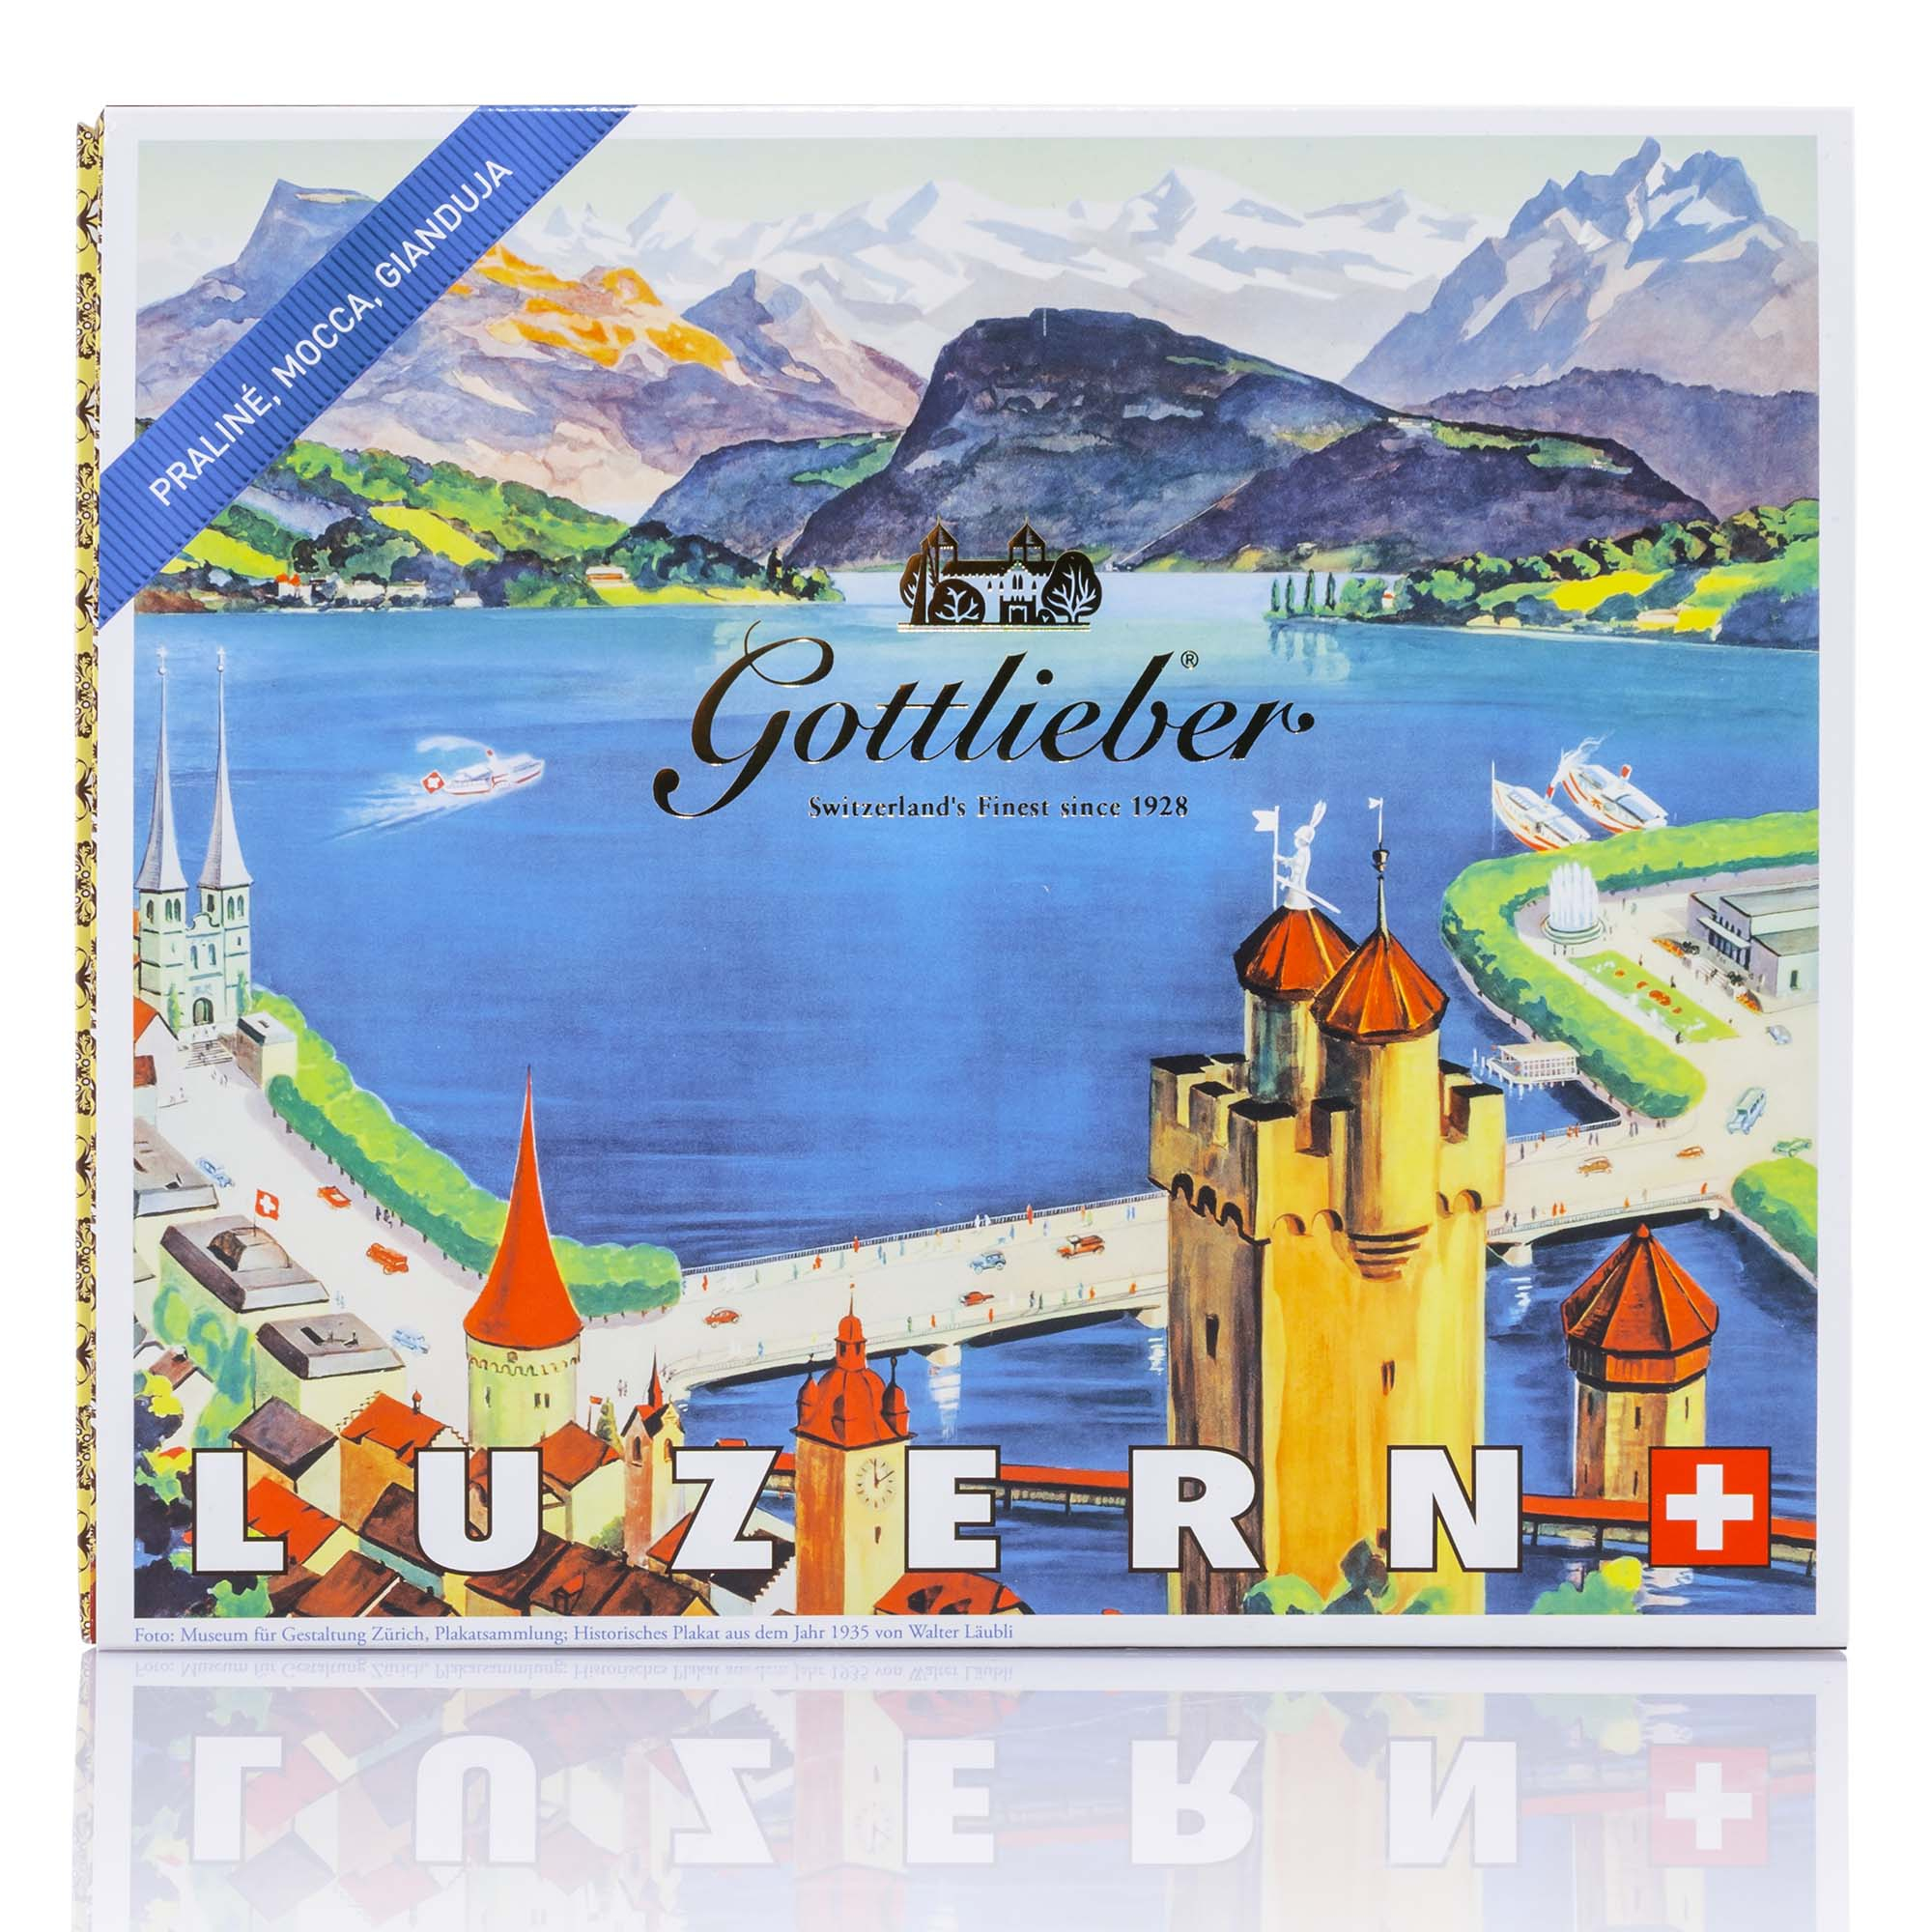 Luzern by Gottlieber Tradition, 20 Stück